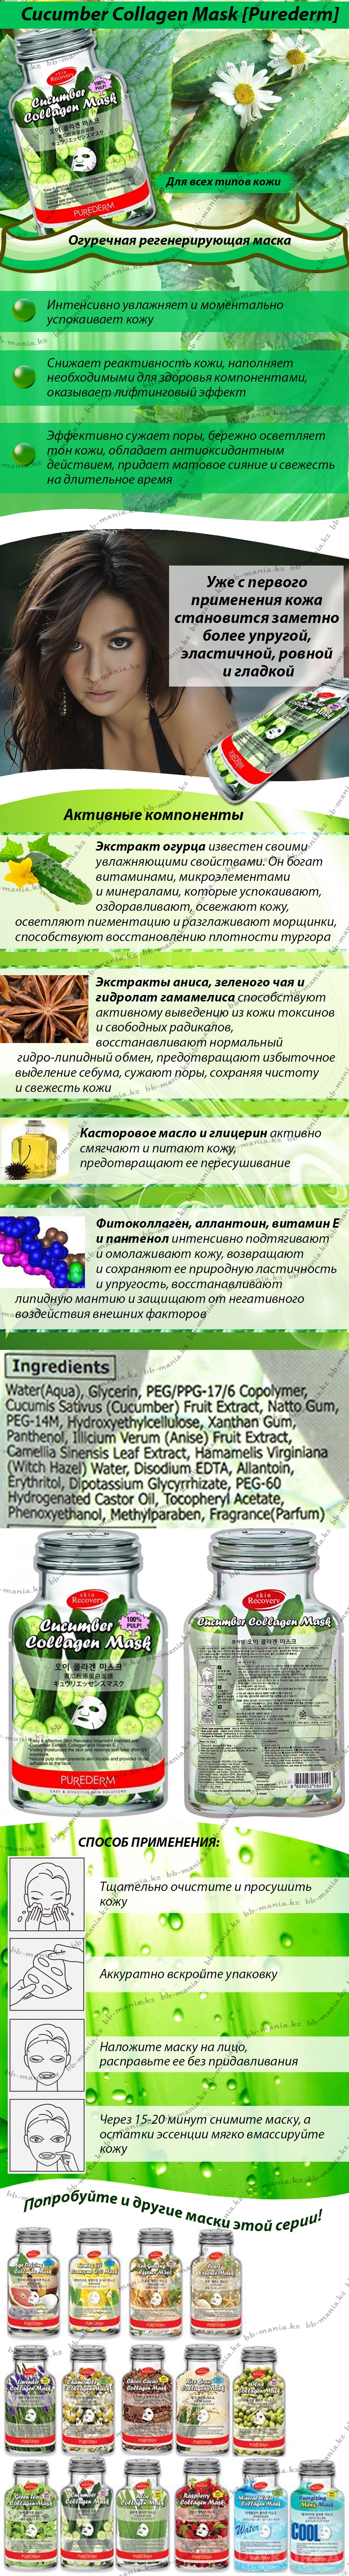 Cucumber-Collagen-Mask-[Purederm]bbmania-min